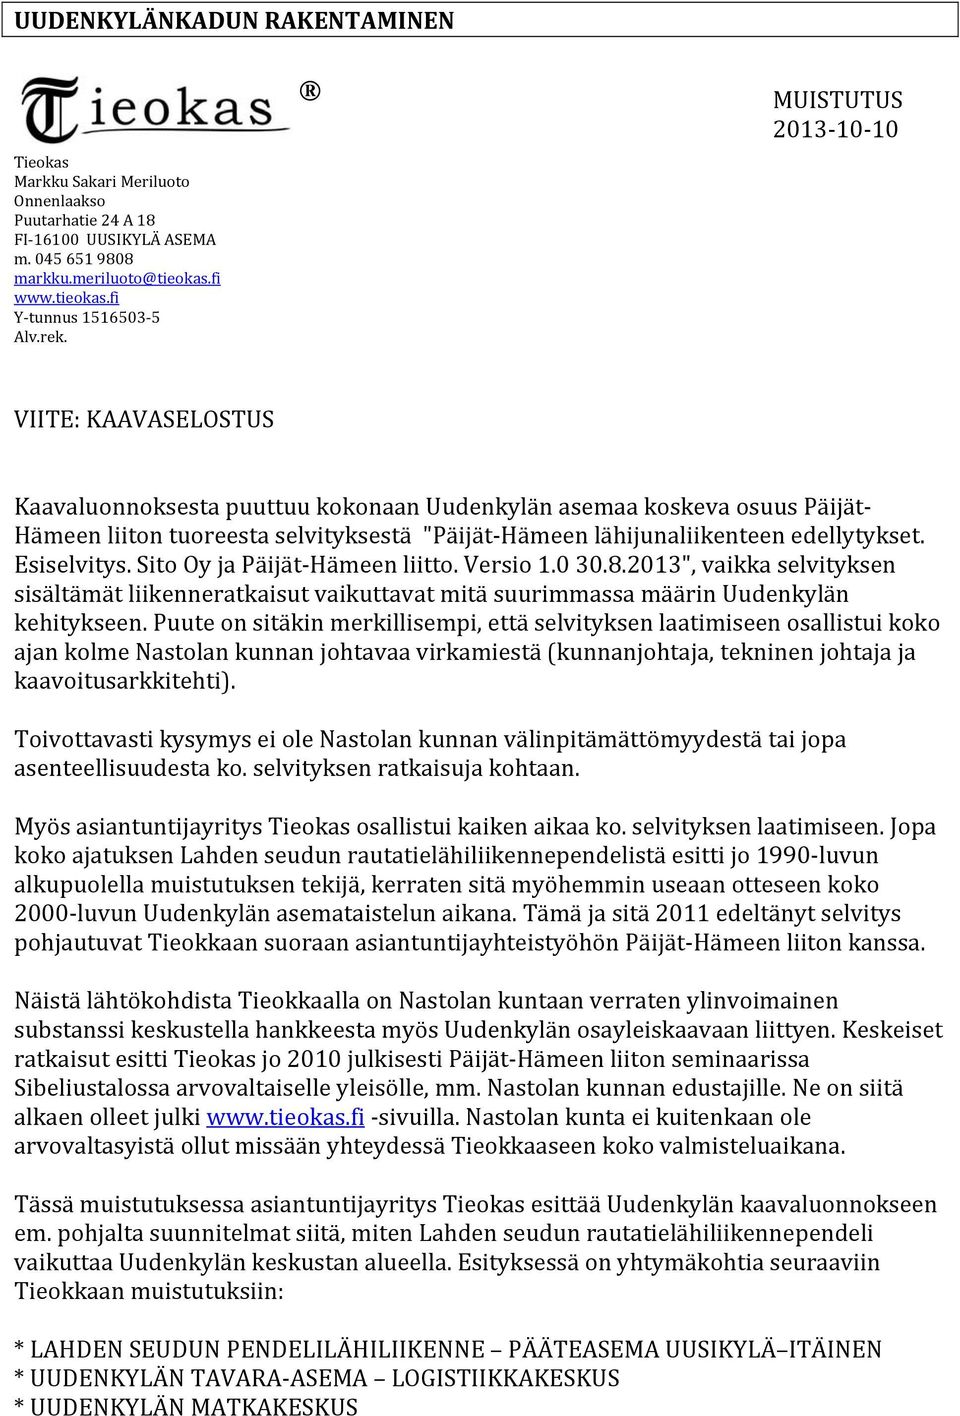 edellytykset. Esiselvitys. Sito Oy ja Päijät Hämeen liitto. Versio 1.0 30.8.2013", vaikka selvityksen sisältämät liikenneratkaisut vaikuttavat mitä suurimmassa määrin Uudenkylän kehitykseen.